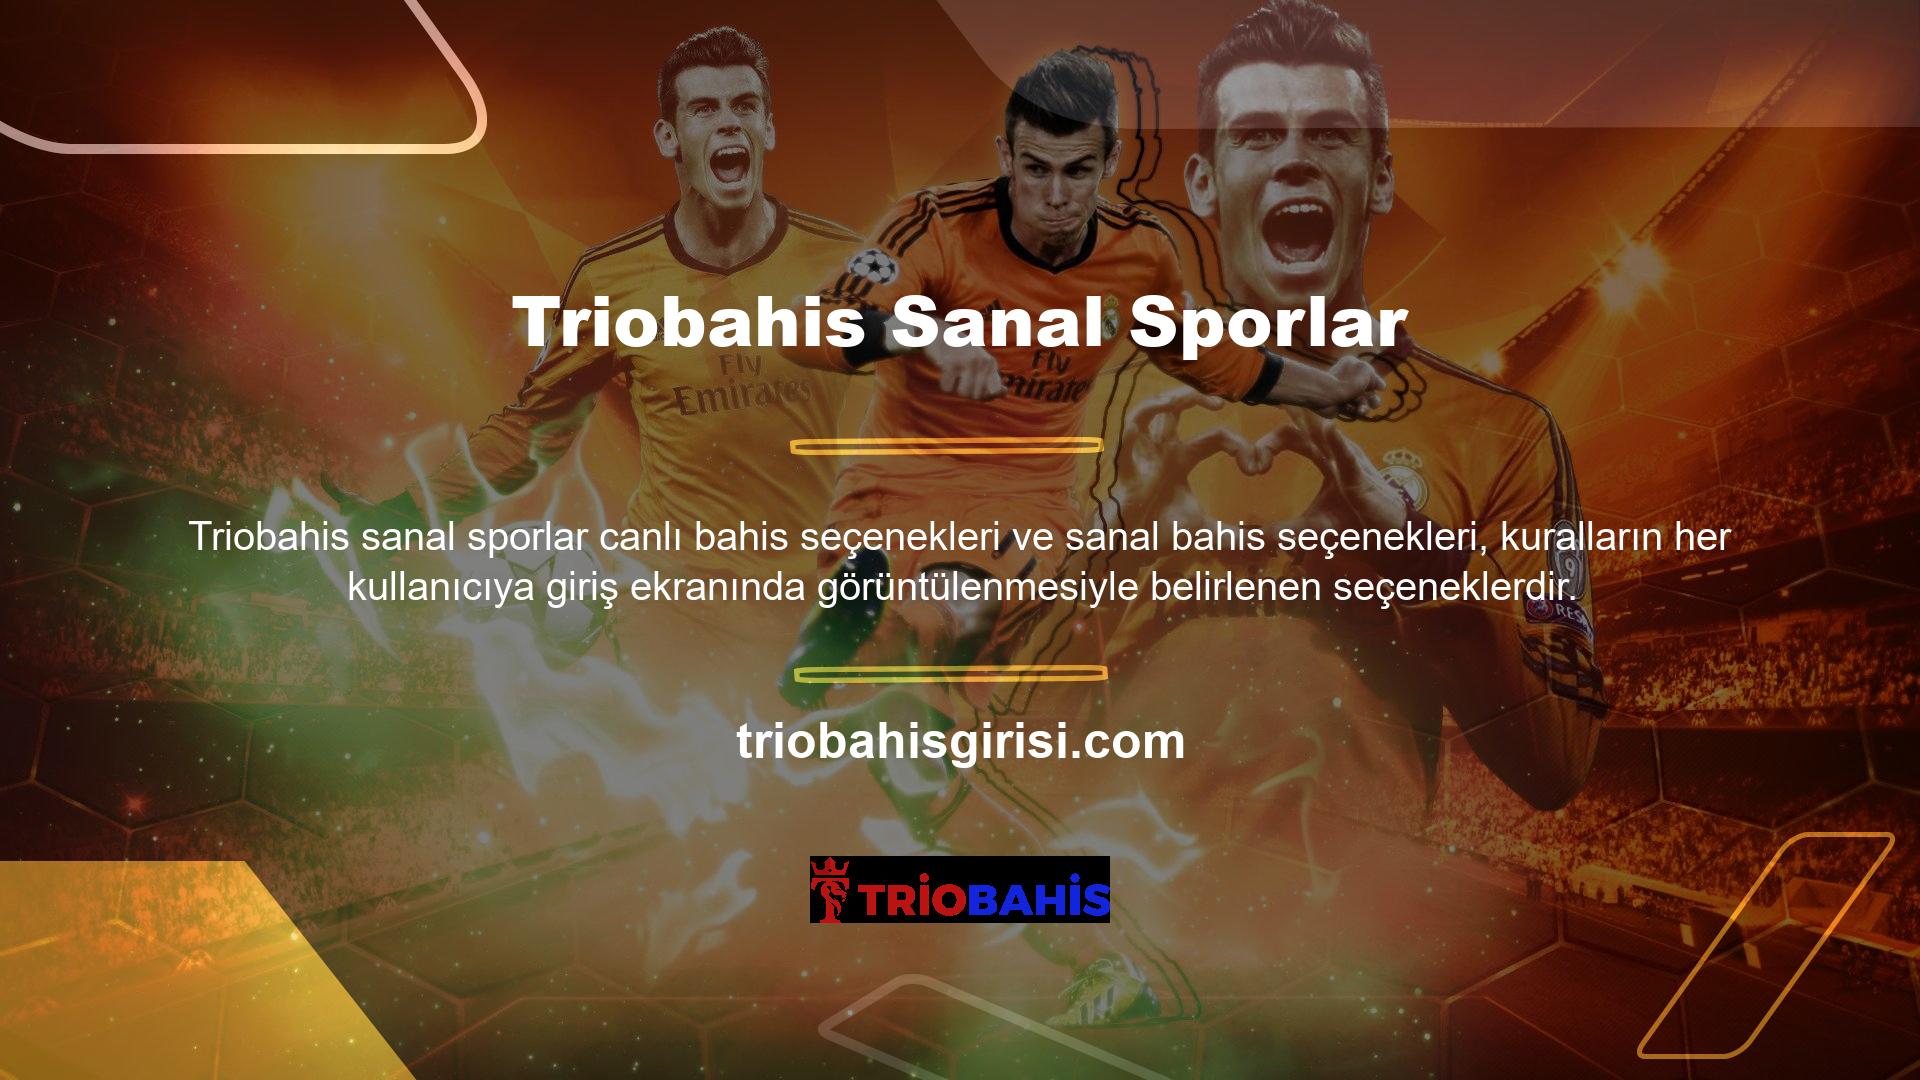 Sitede bulunan Triobahis sanal spor uygulamalarına ilişkin sanal spor bahisleri konusu bulunmaktadır